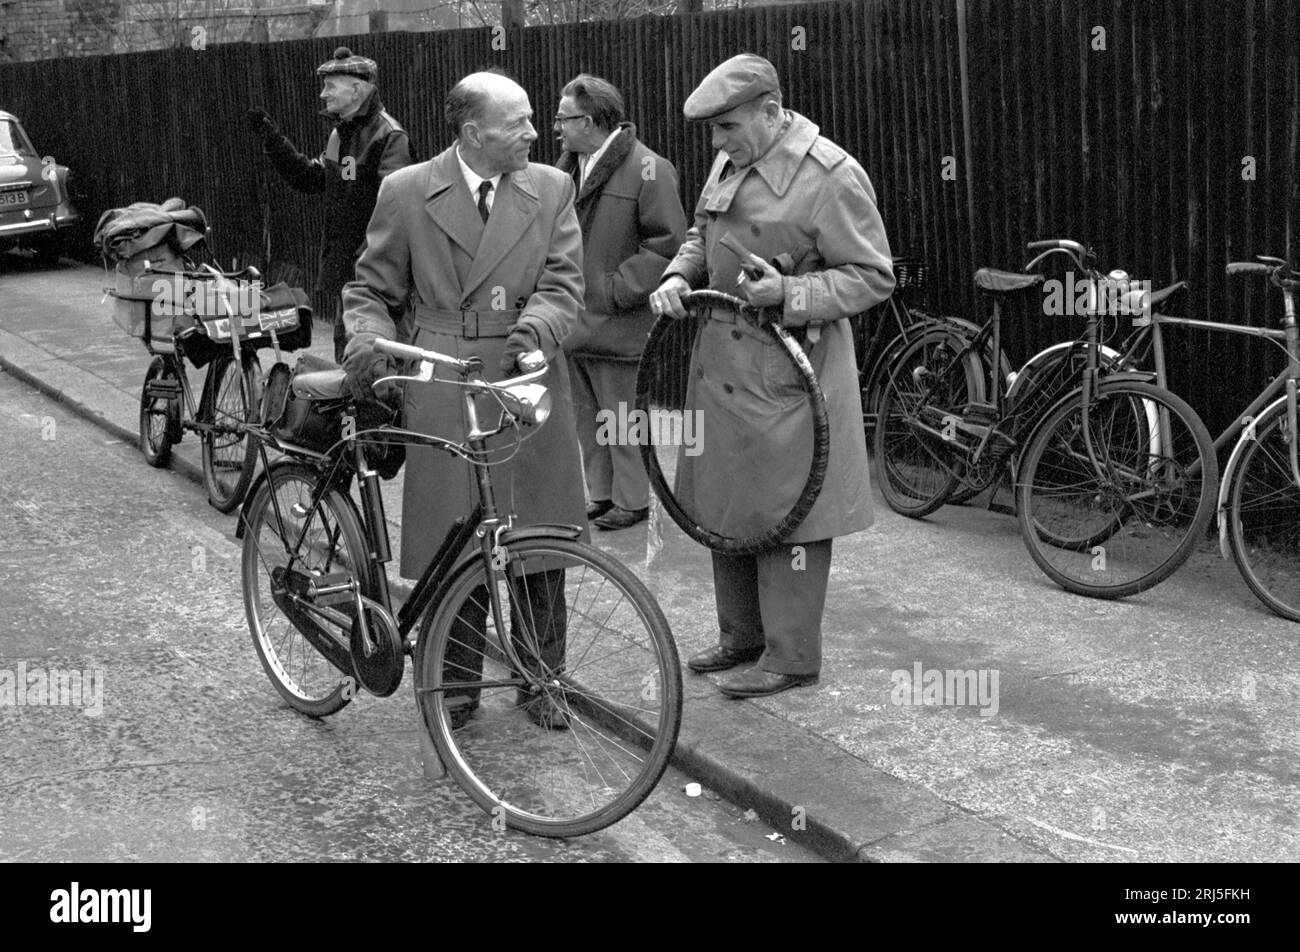 Marché de Chilton Street Tower Hamlets marché de vélos d'occasion près de Brick Lane. Marché du dimanche matin vélos à pédales usagés d'occasion à vendre. Années 1970 Angleterre 1974. ROYAUME-UNI HOMER SYKES Banque D'Images